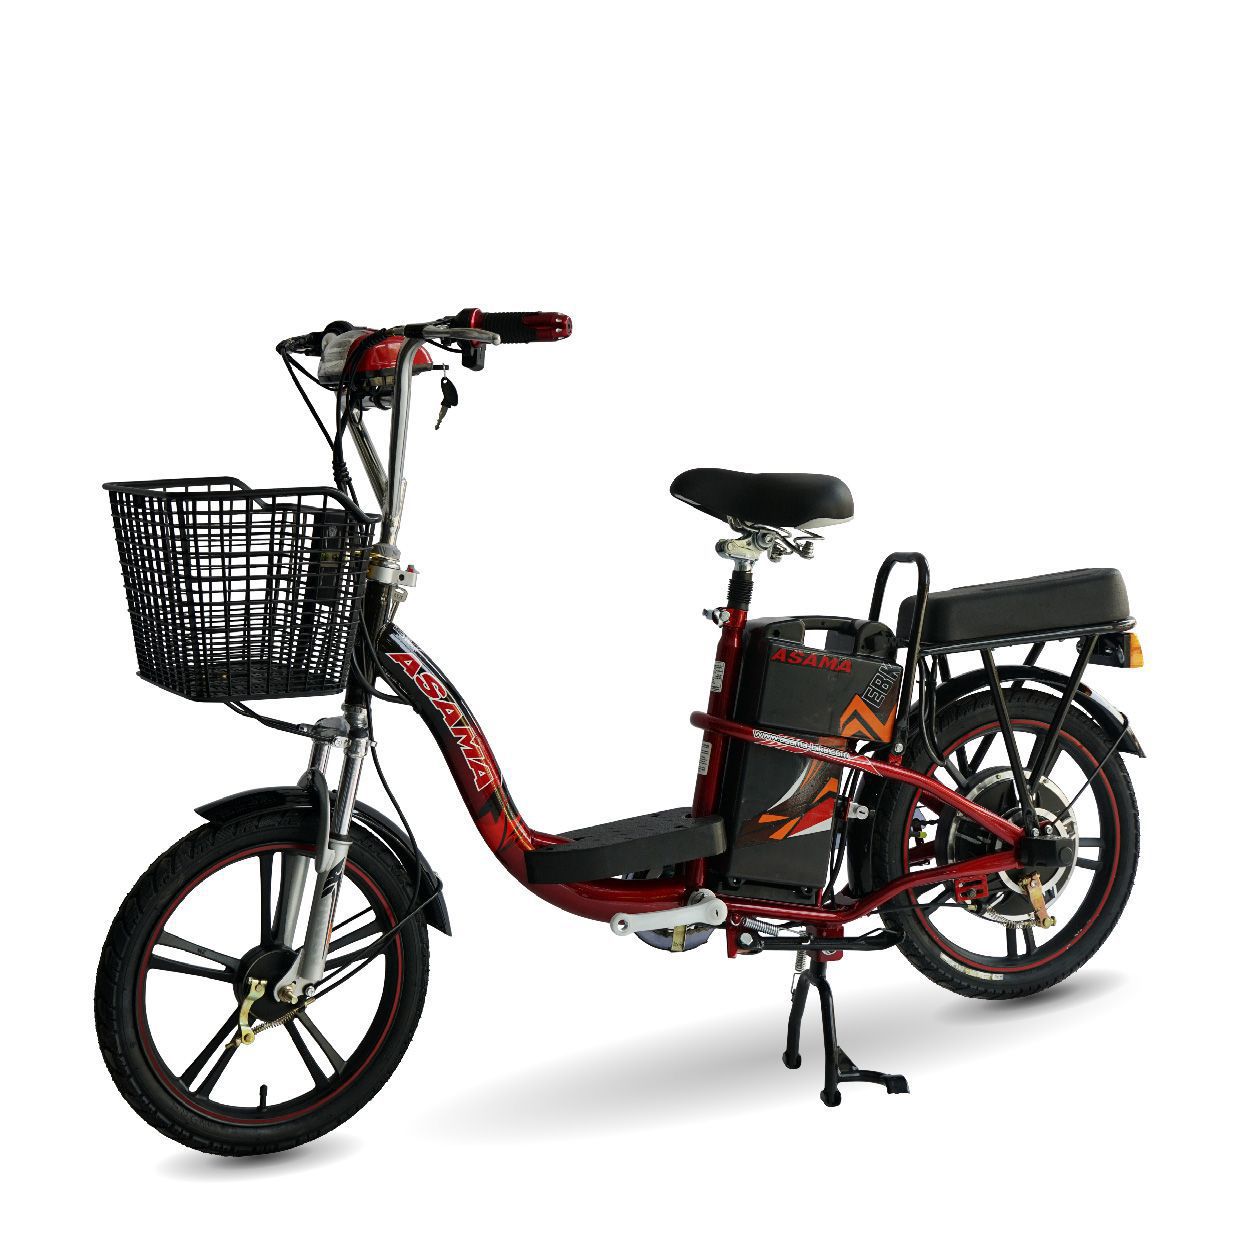 Xe đạp điện Asama EBK